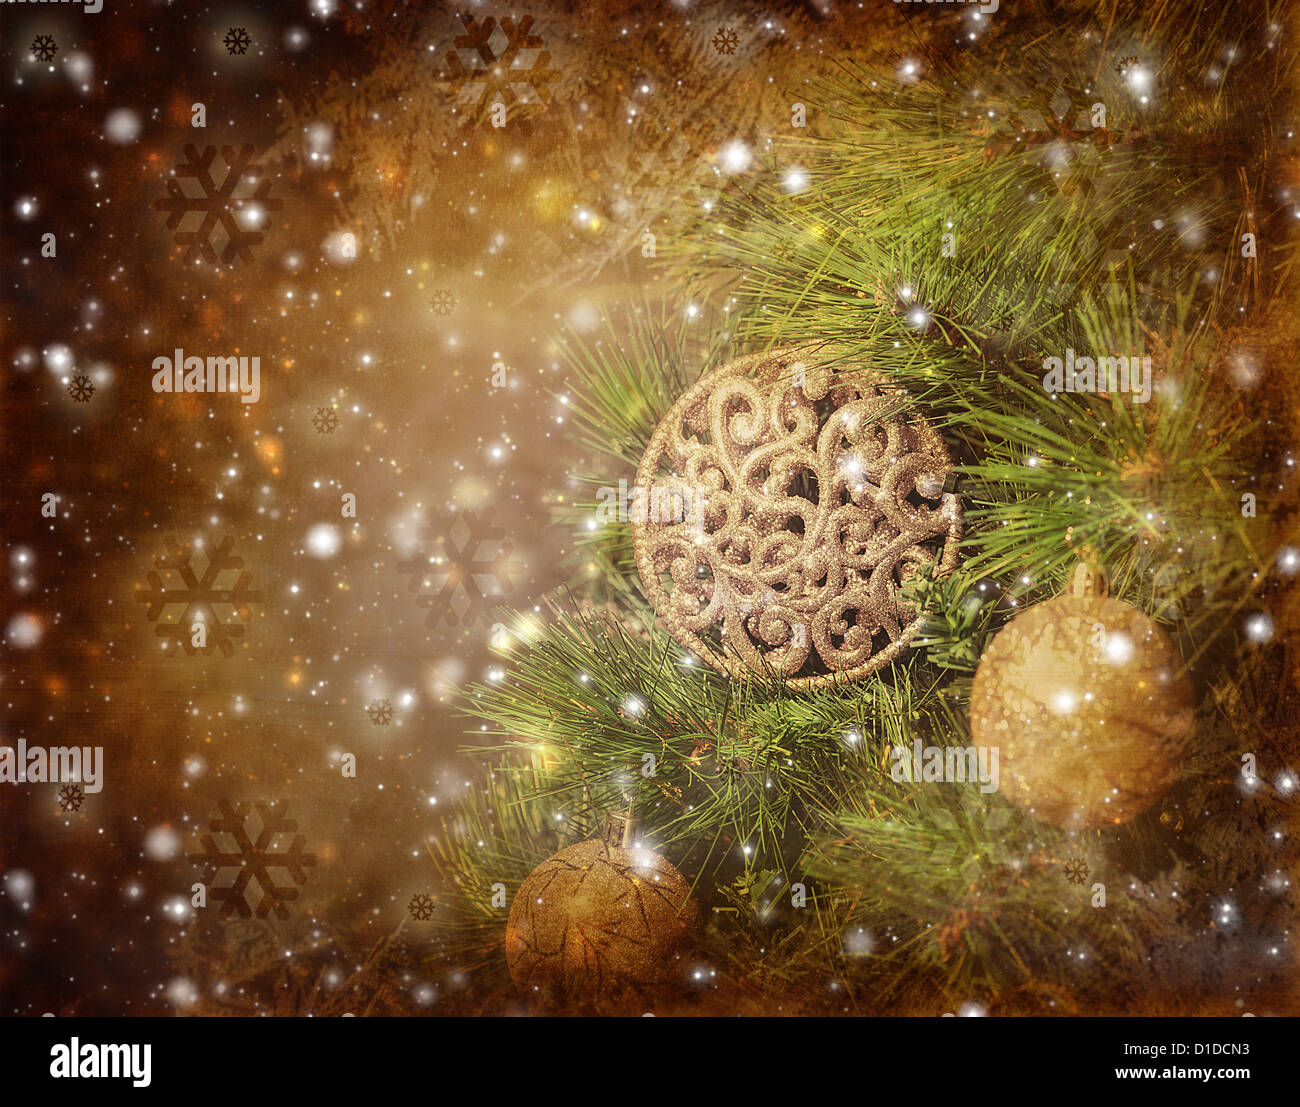 Foto von traditionellen Weihnachtsbaum isoliert auf braune Grunge Hintergrund, grüne Tanne geschmückt mit goldenen Perlen Spielzeug Stockfoto